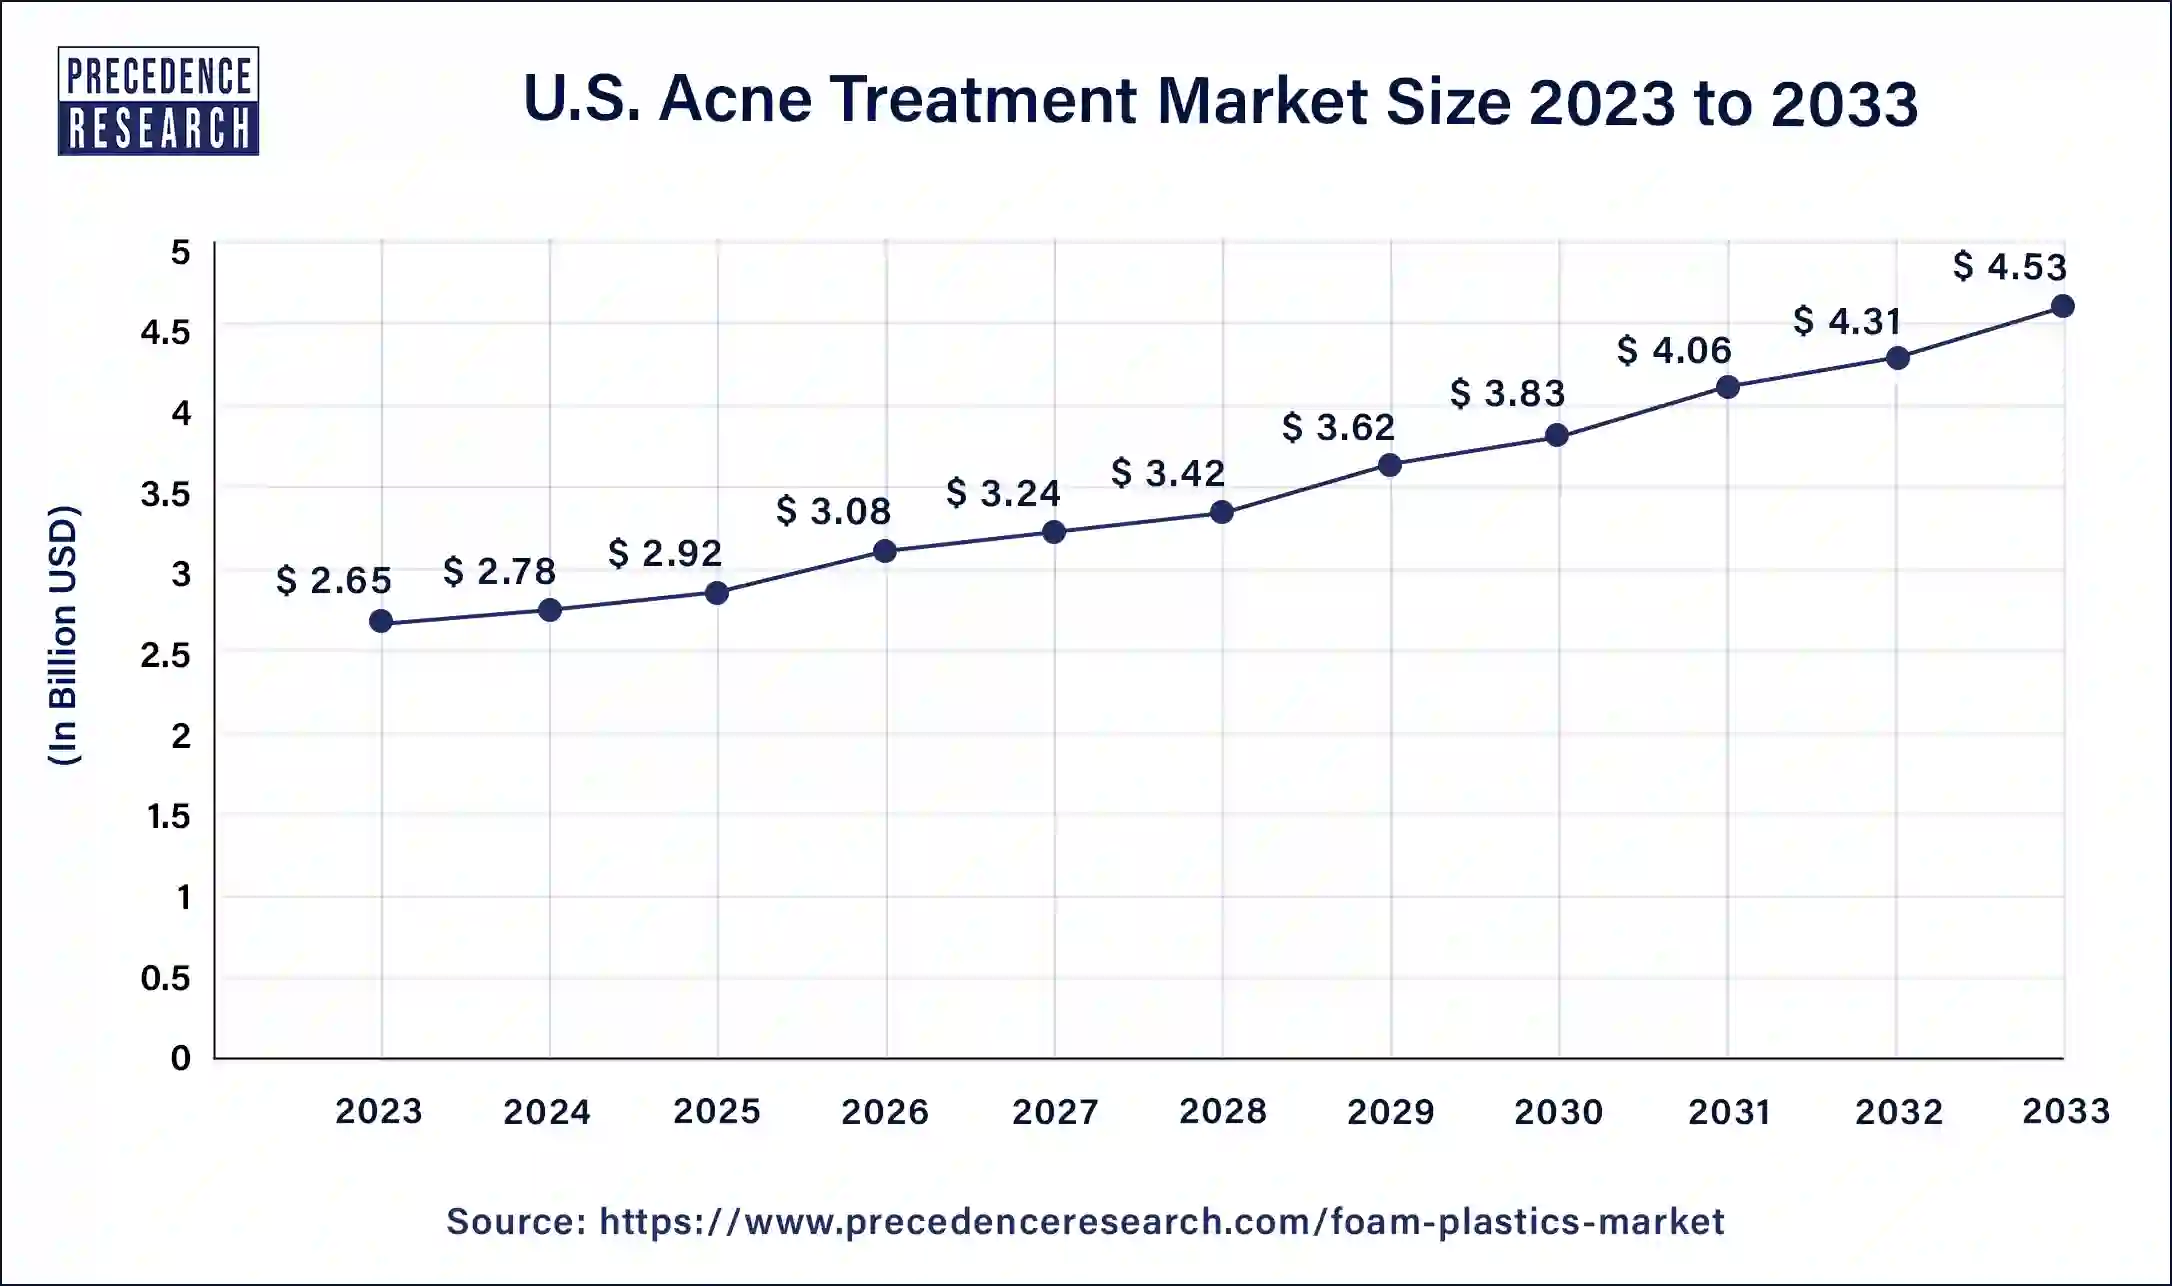 U.S. Acne Treatment Market Size 2024 to 2033